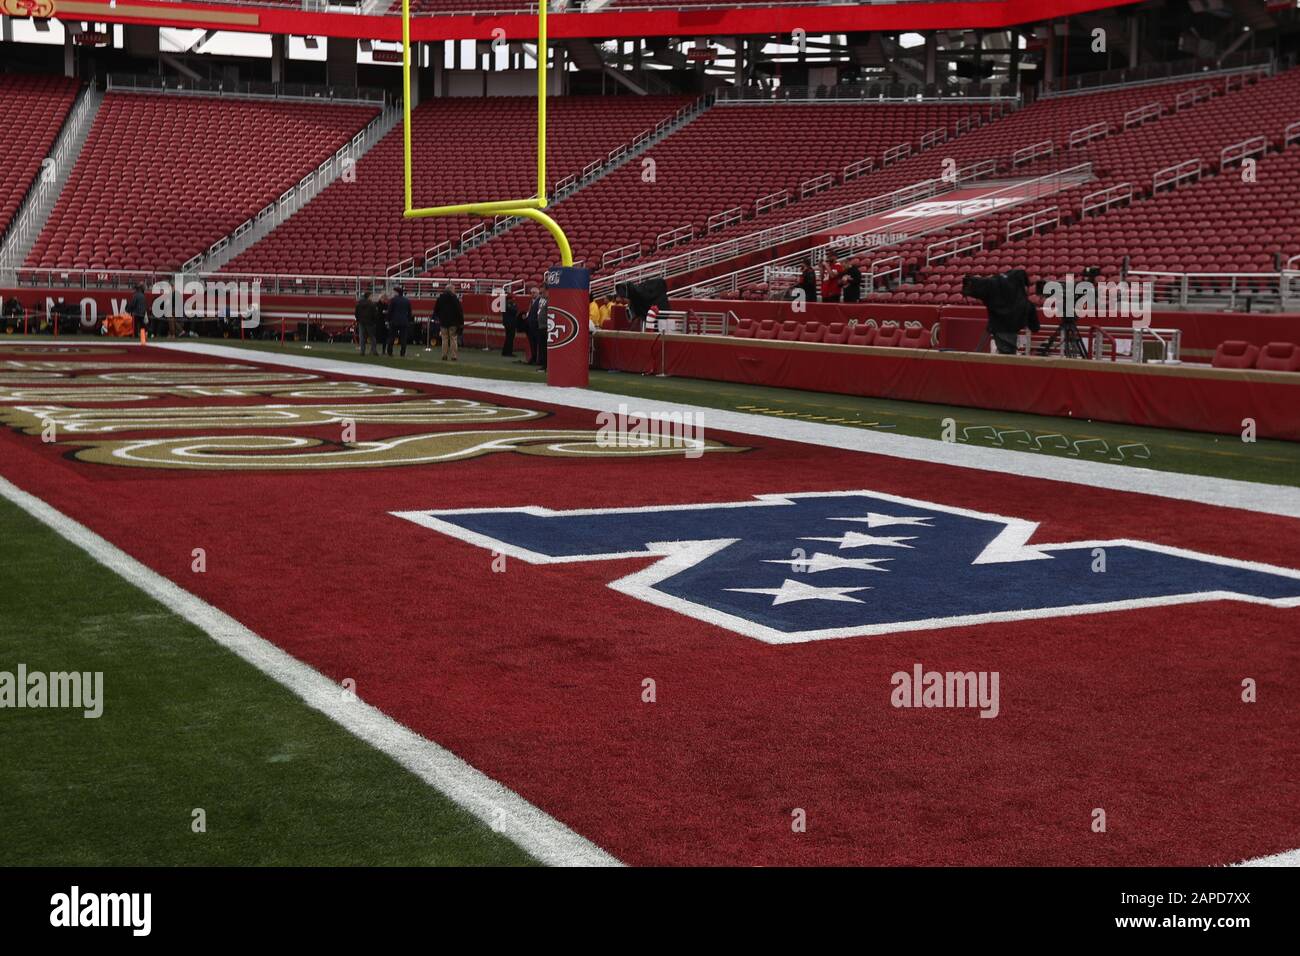 Vedute generali dello Stadio Levi's prima della partita del campionato NFL NFC tra i Green Bay Packers e San Francisco 49ers, domenica 19 gennaio 2020, a Santa Clara, California (Foto di IOS/ESPA-Images) Foto Stock